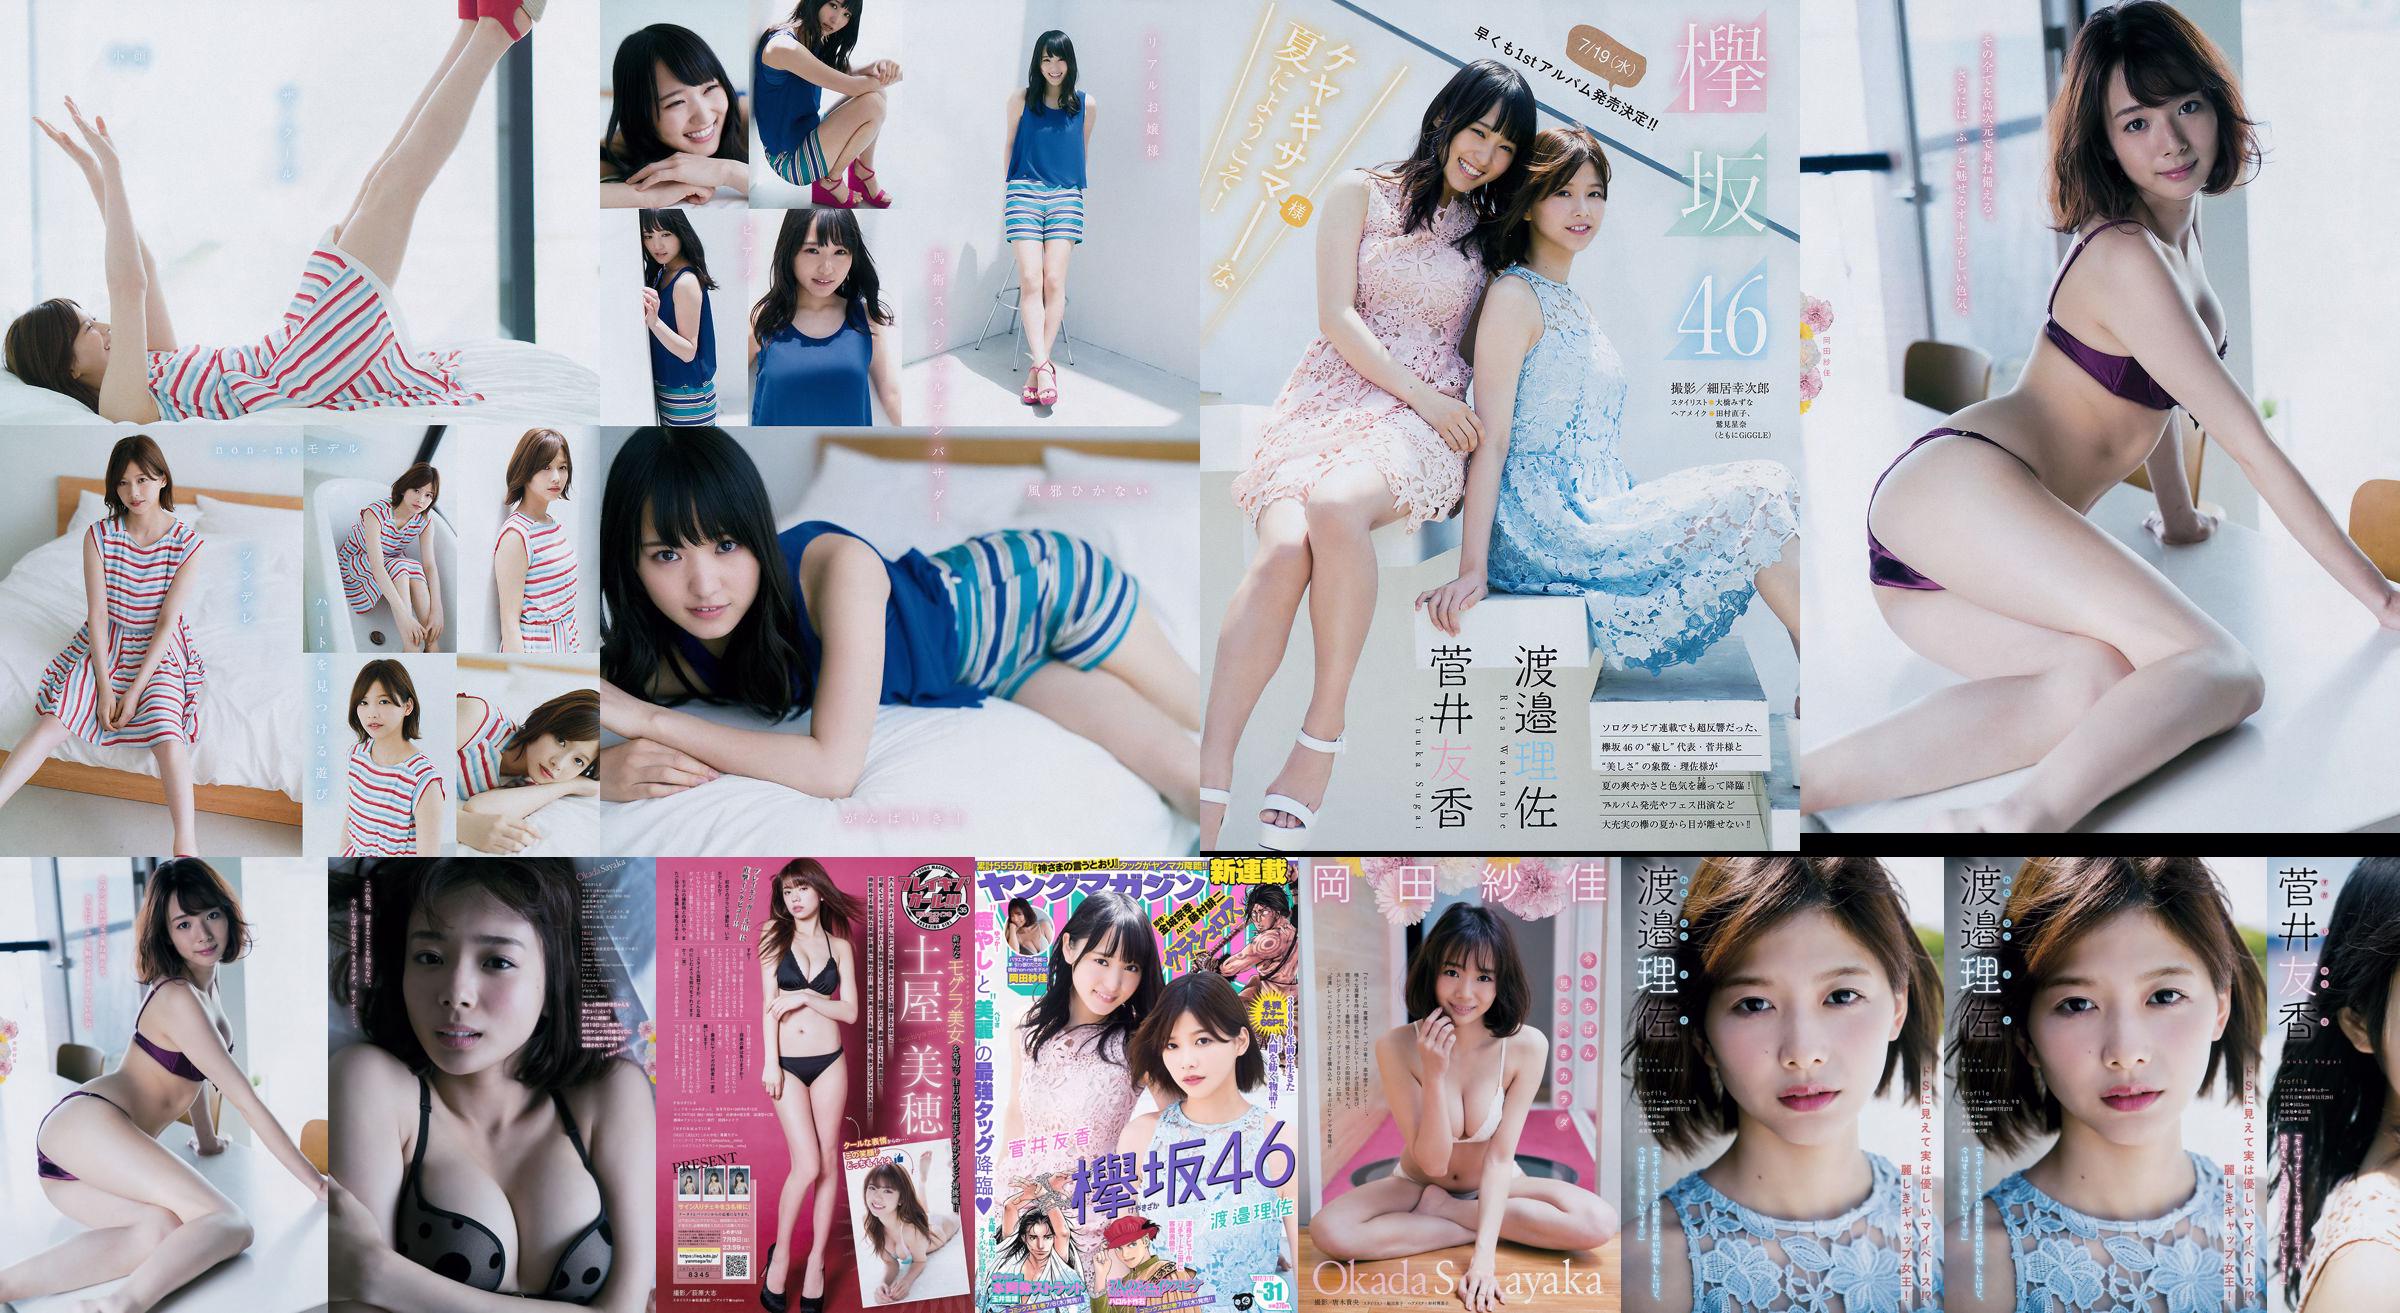 [Tạp chí trẻ] Watanabe Risa, Sugai Yuka, Tạp chí ảnh số 31 của Okada Saika 2017 No.010905 Trang 1